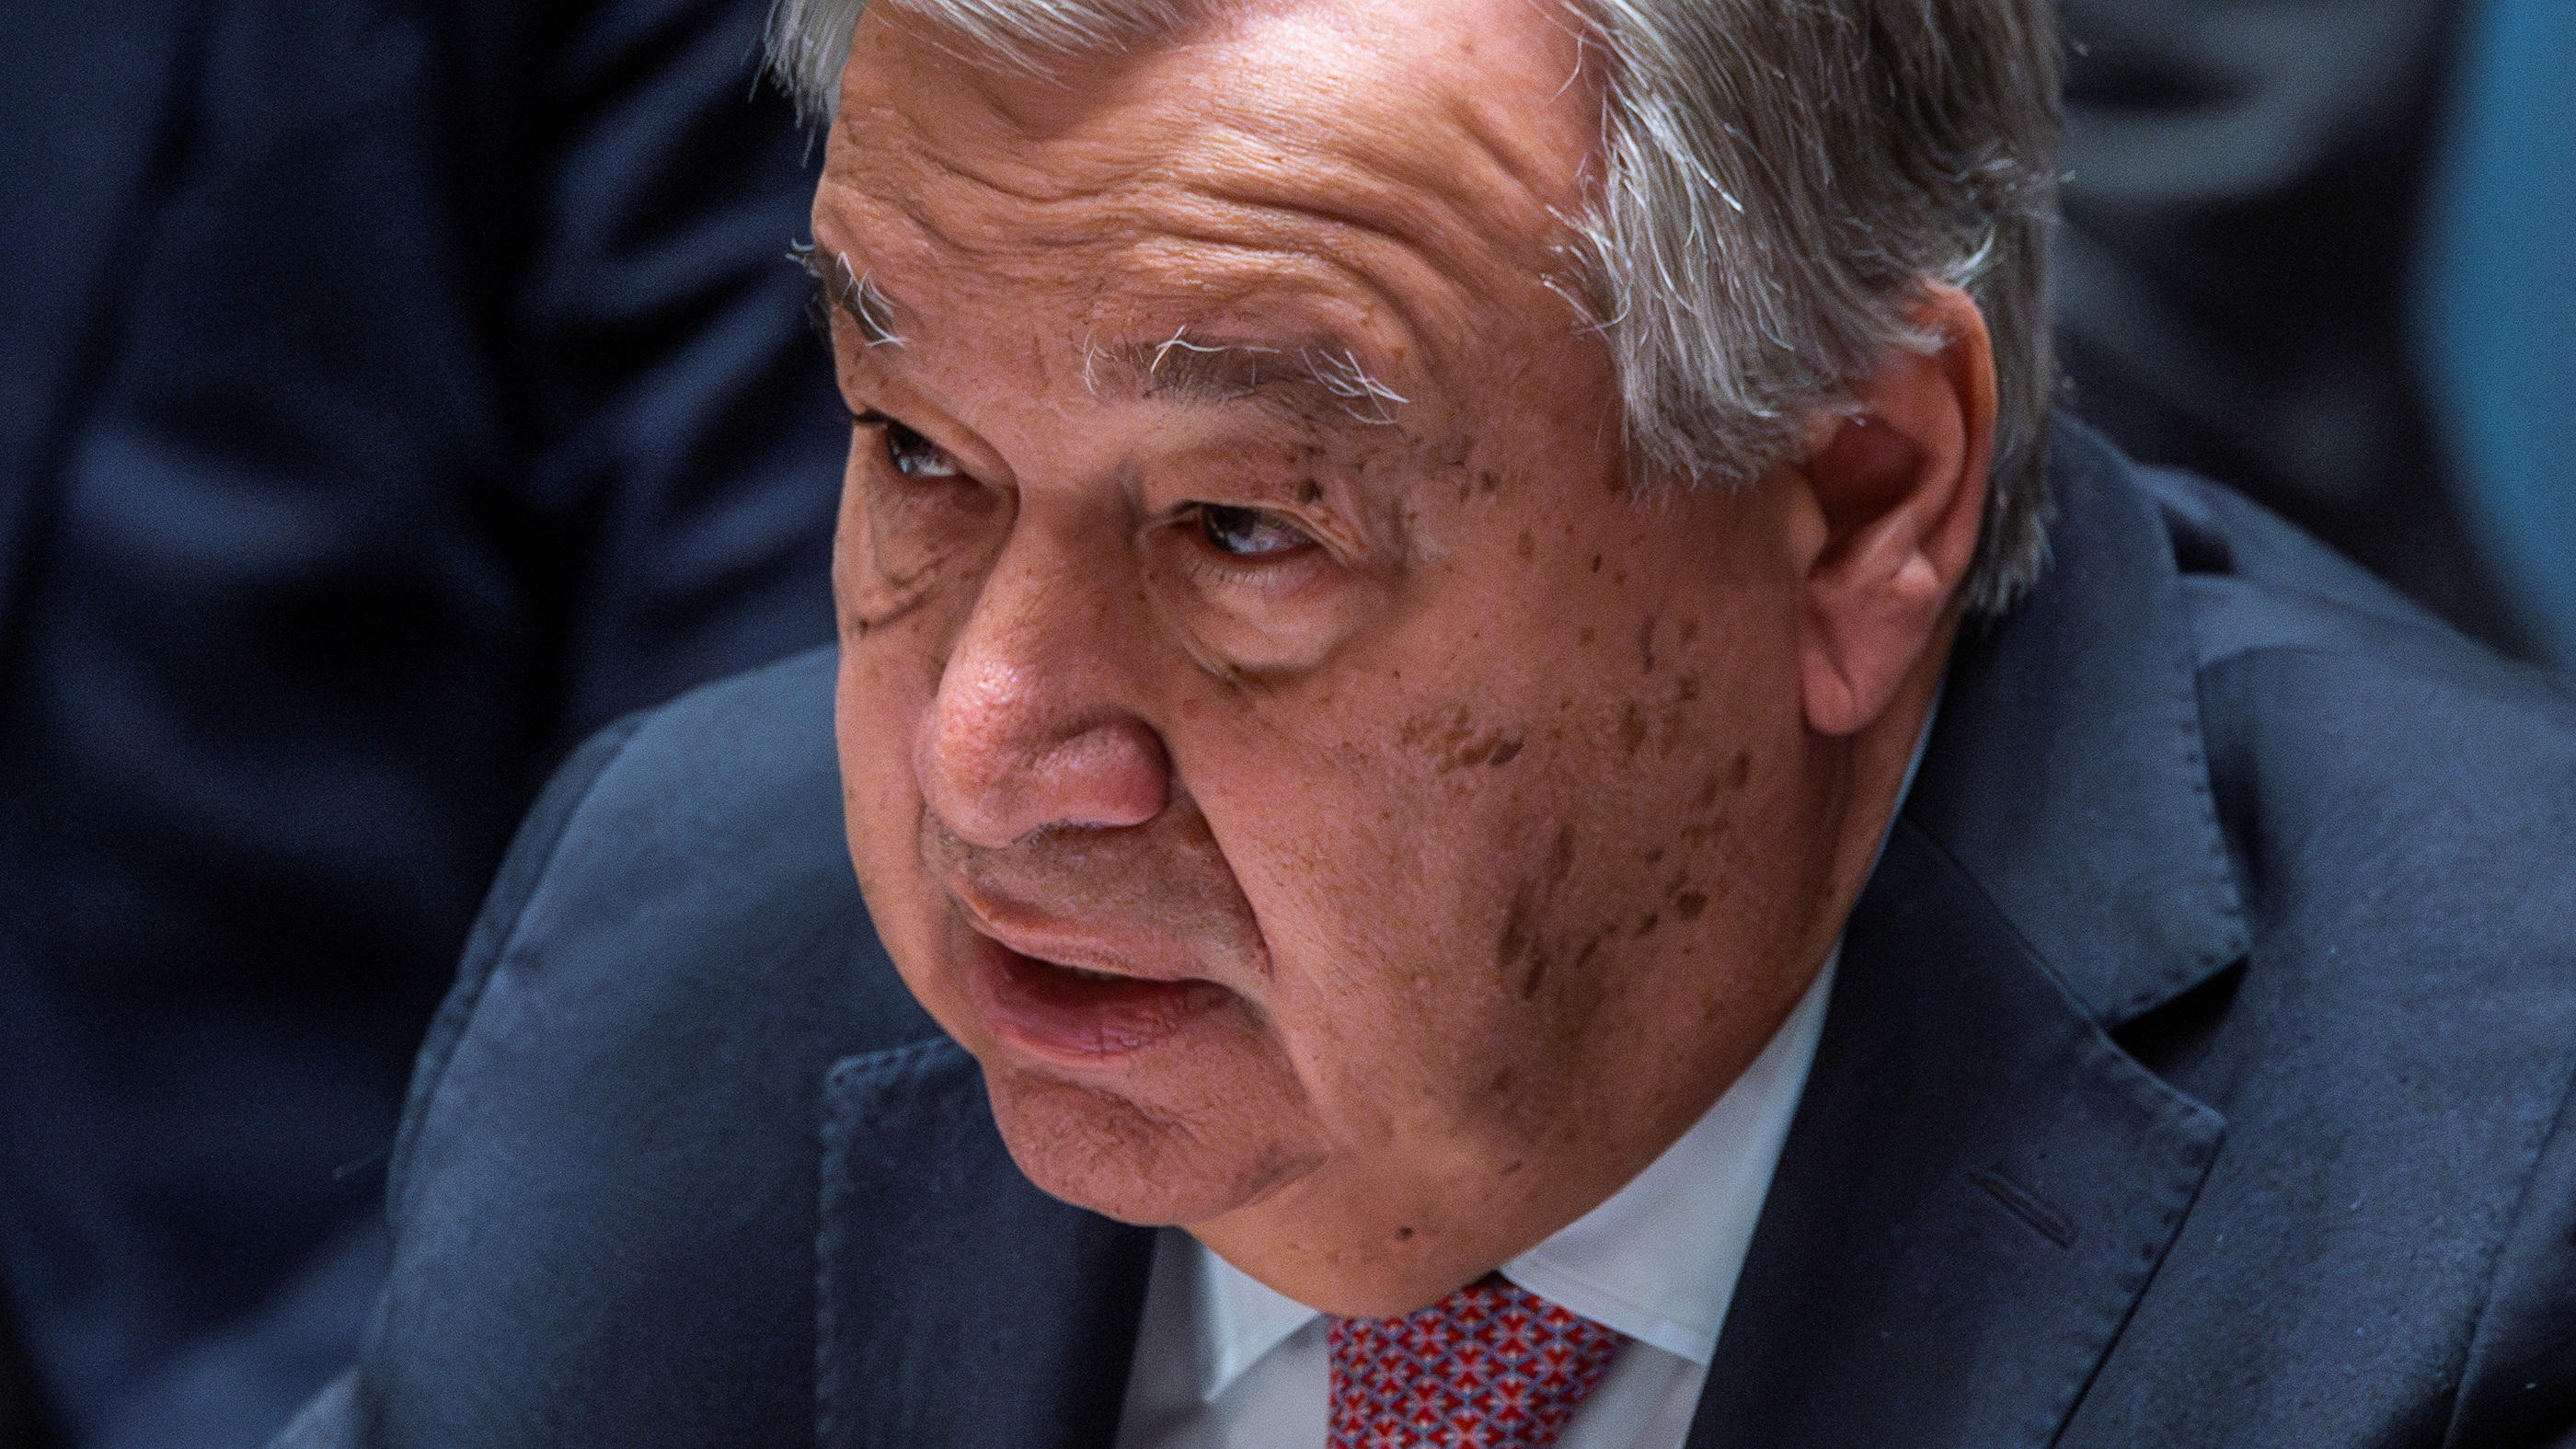 Le chef de l'ONU Antonio Guterres, ce dimanche lors d'un conseil de sécurité. REUTERS/Eduardo Munoz